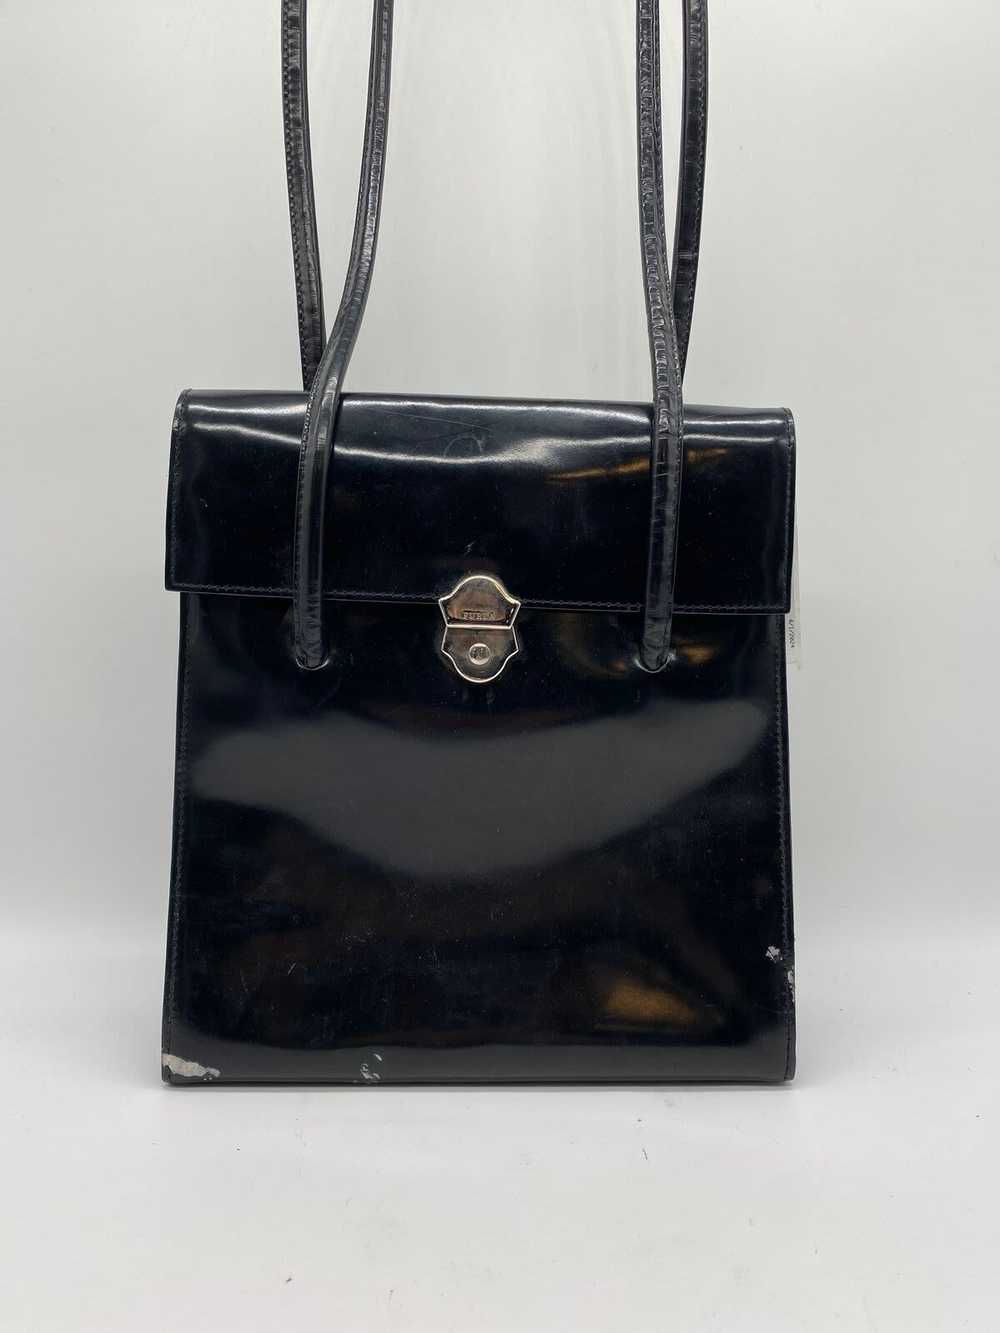 Furla Black Handbag - image 1